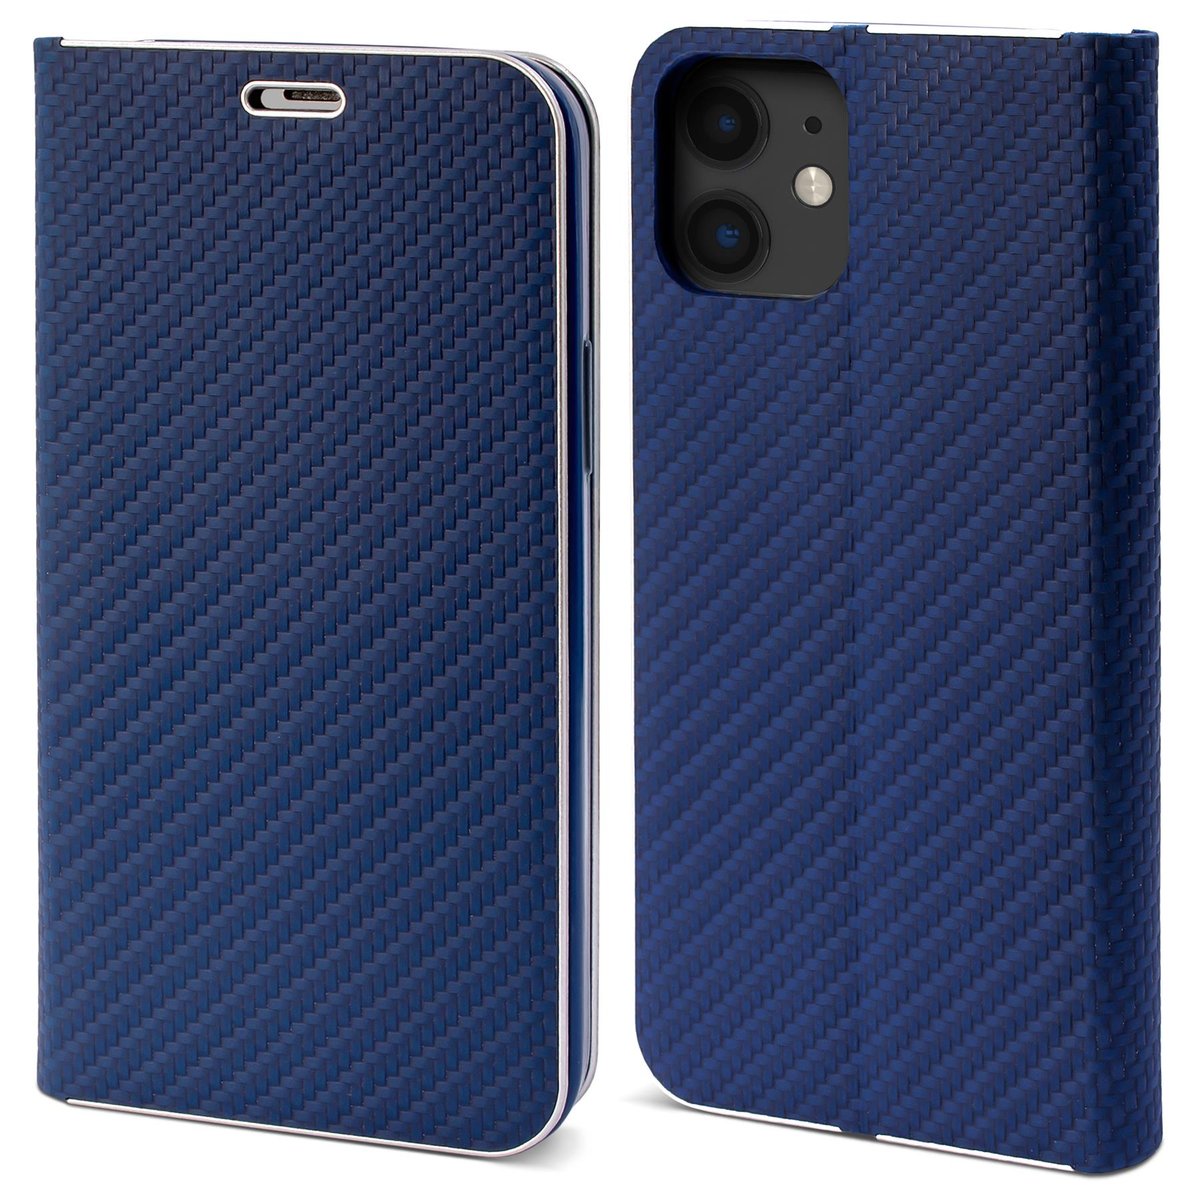 Moozy Etui z portfelem do iPhone'a 11, ciemnoniebieski karbon - metaliczna ochrona krawędzi, magnetyczne zamknięcie, klapka z uchwytem na kartę